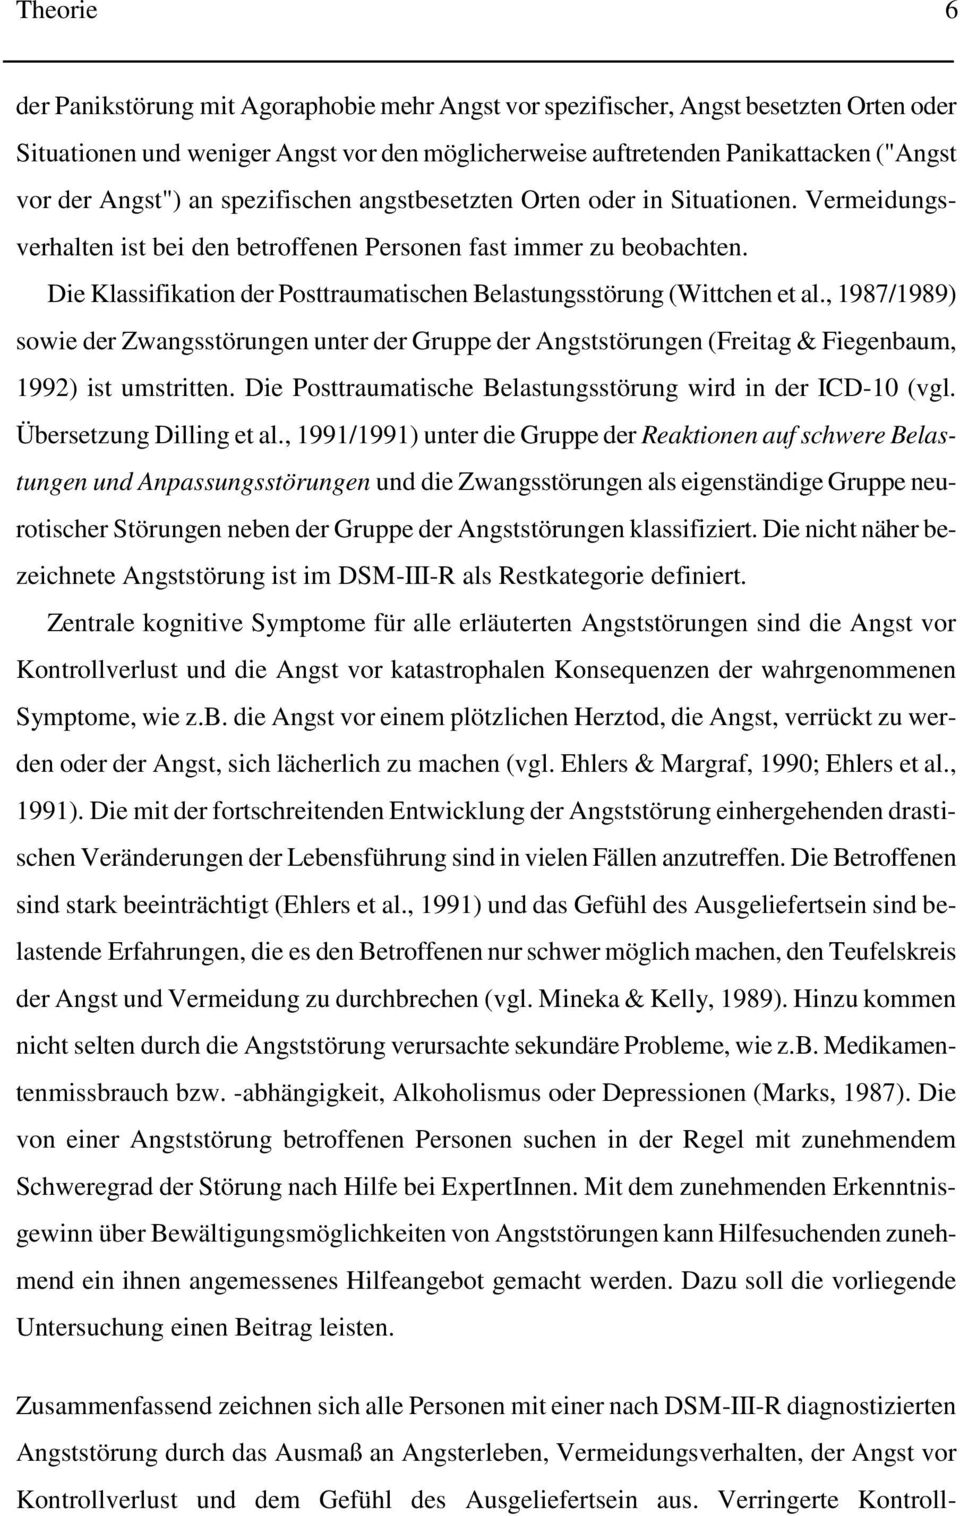 , 1987/1989) sowie der Zwngsstörungen unter der Gruppe der Angststörungen (Freitg & Fiegenbum, 1992) ist umstritten. Die Posttrumtische Belstungsstörung wird in der ICD-10 (vgl.